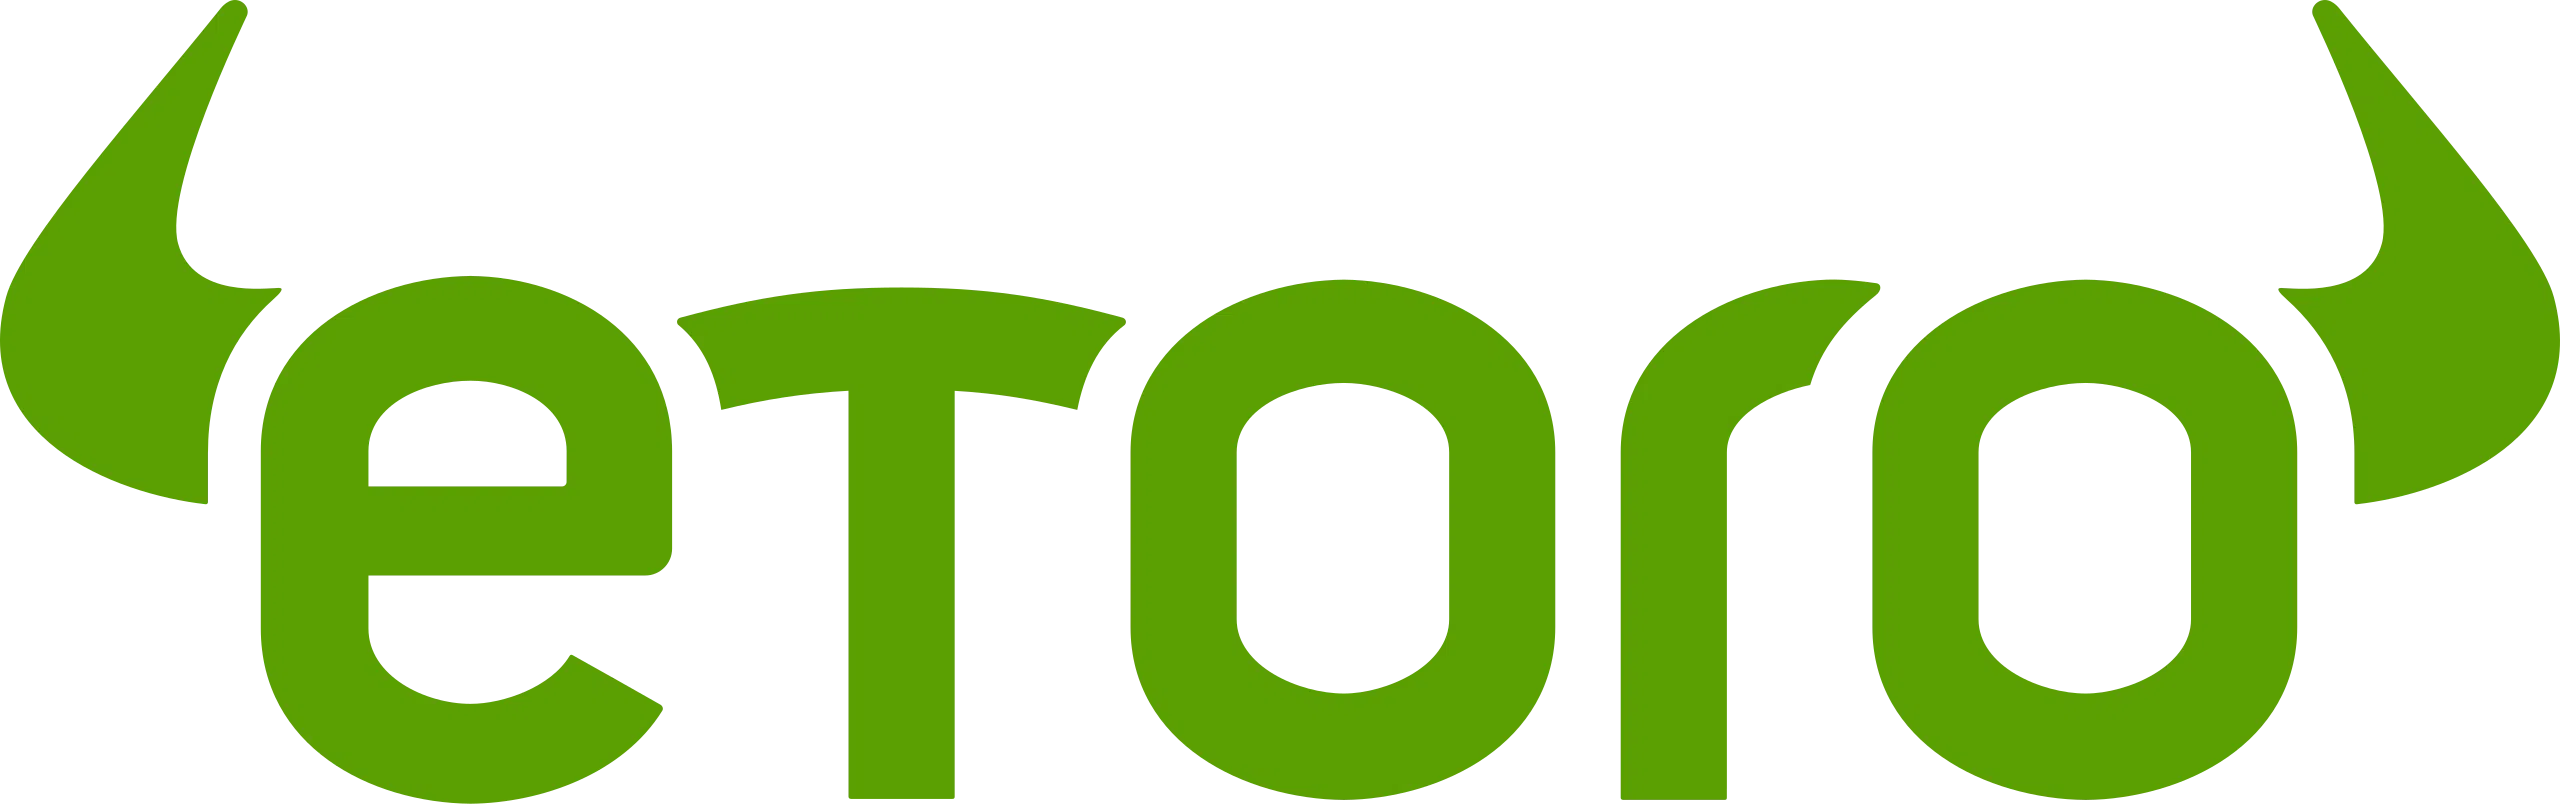 logo du site de trading etoro cryptomonnaie cfd action